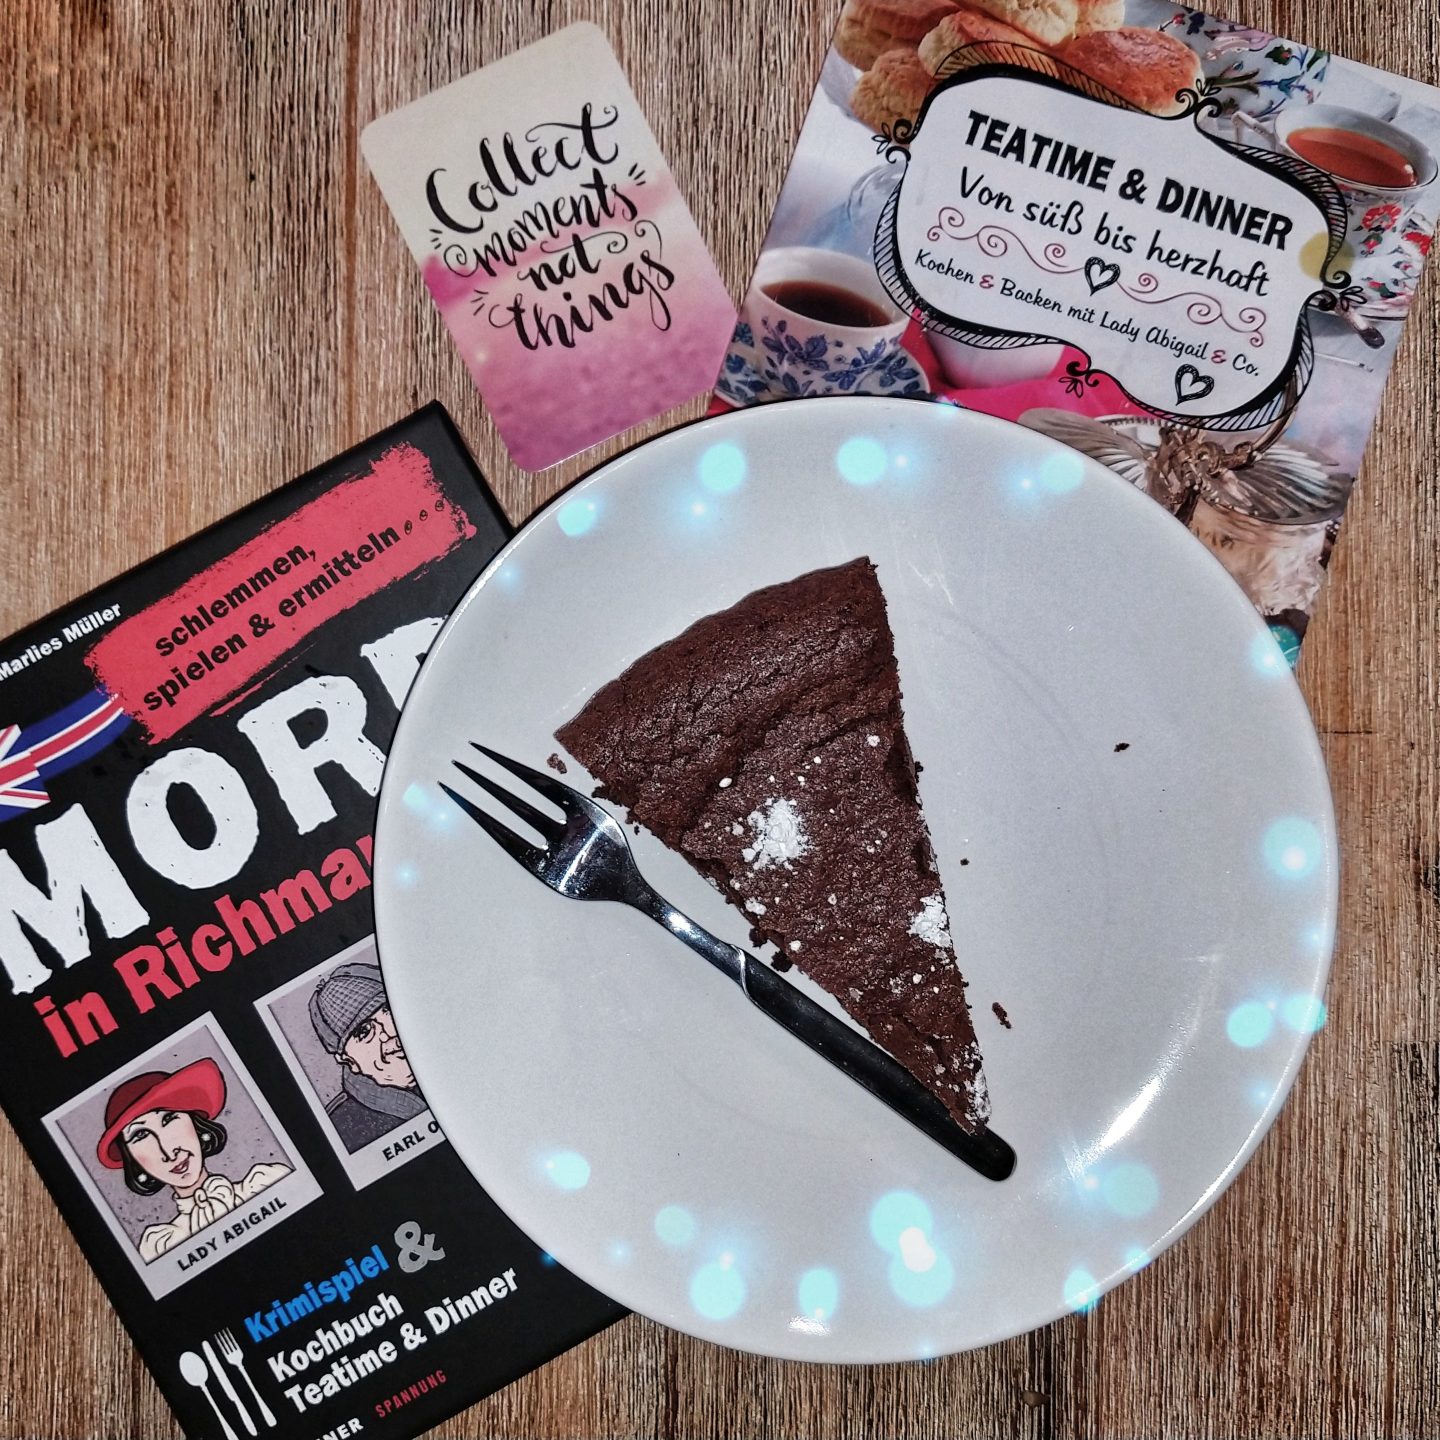 Die Verpackung des Krimi-Dinners Mord in Richman Hall neben einem Stück Schokoladen Tarte auf einem Teller und dem Kochbuch zum Spiel